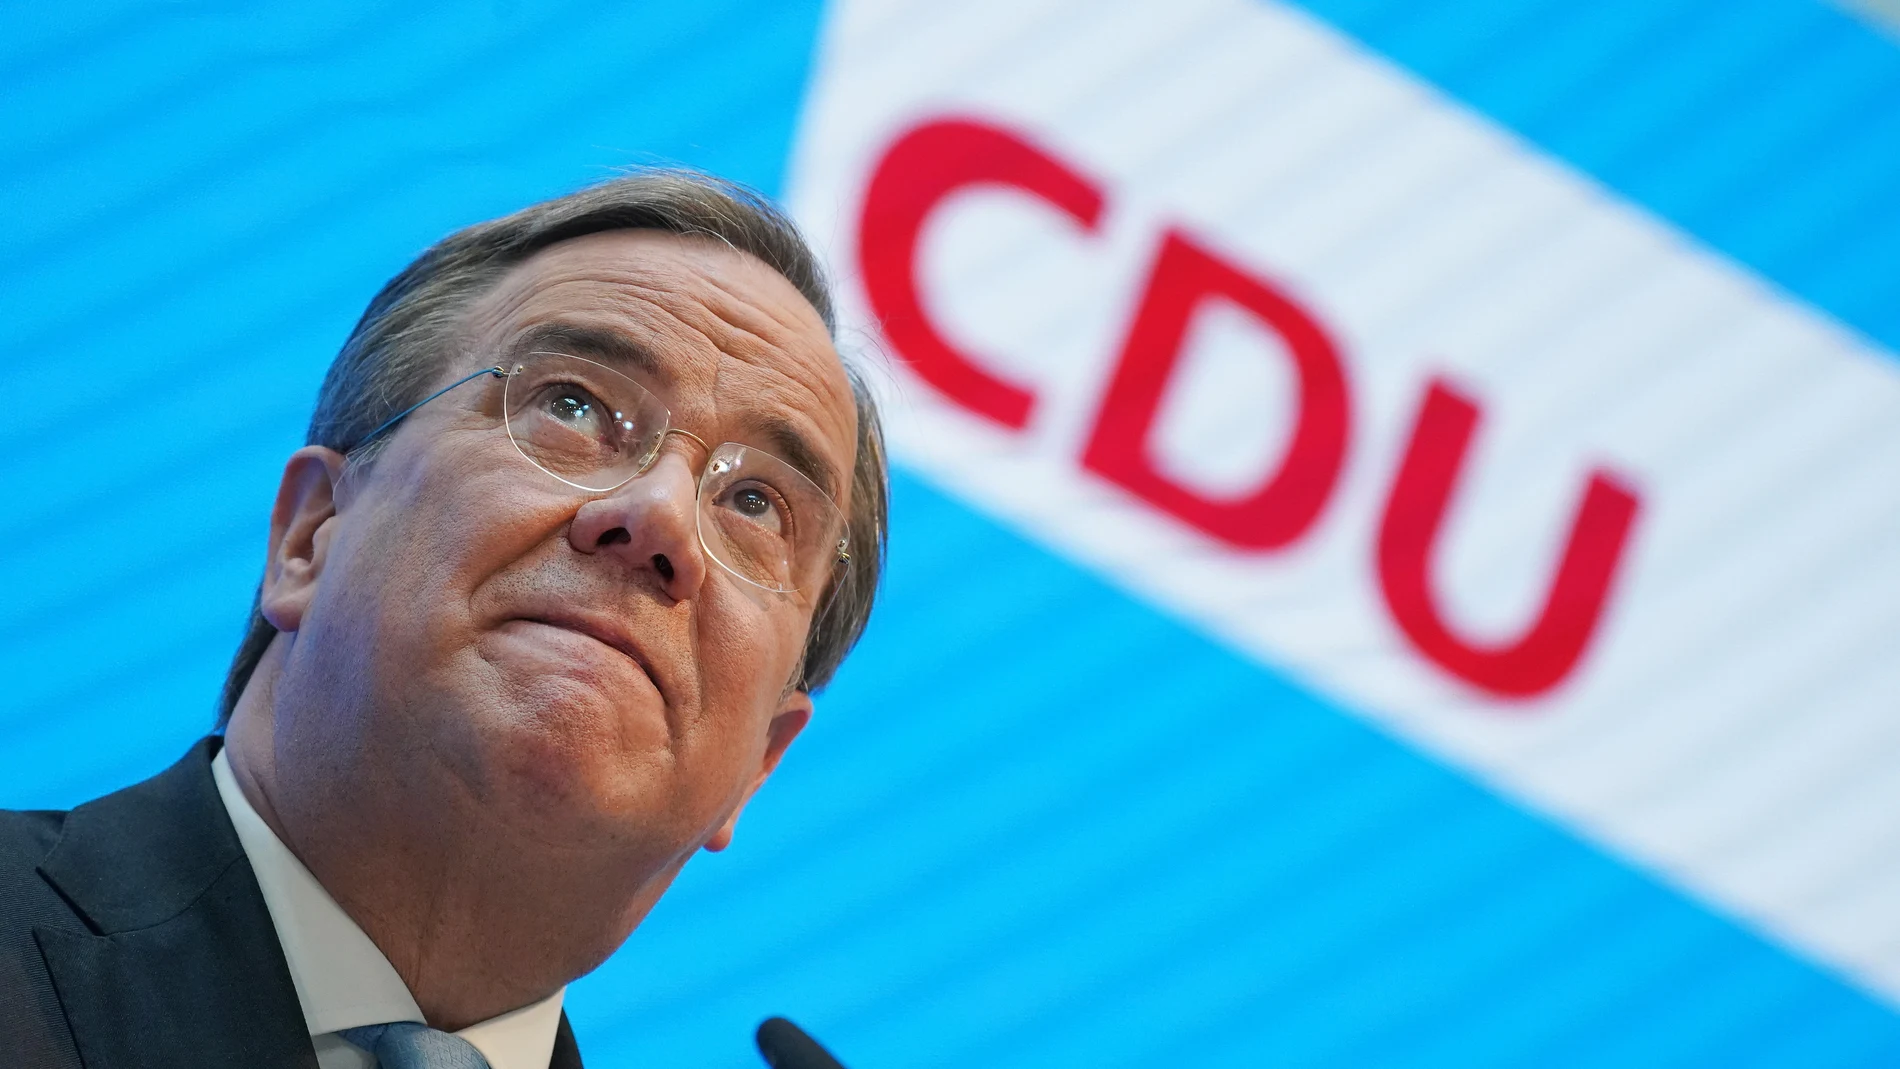 El presidente de la CDU, Armin Laschet, ha sido ratificado como candidato a la Cancillería después de que Markus Söder le disputase el cargo